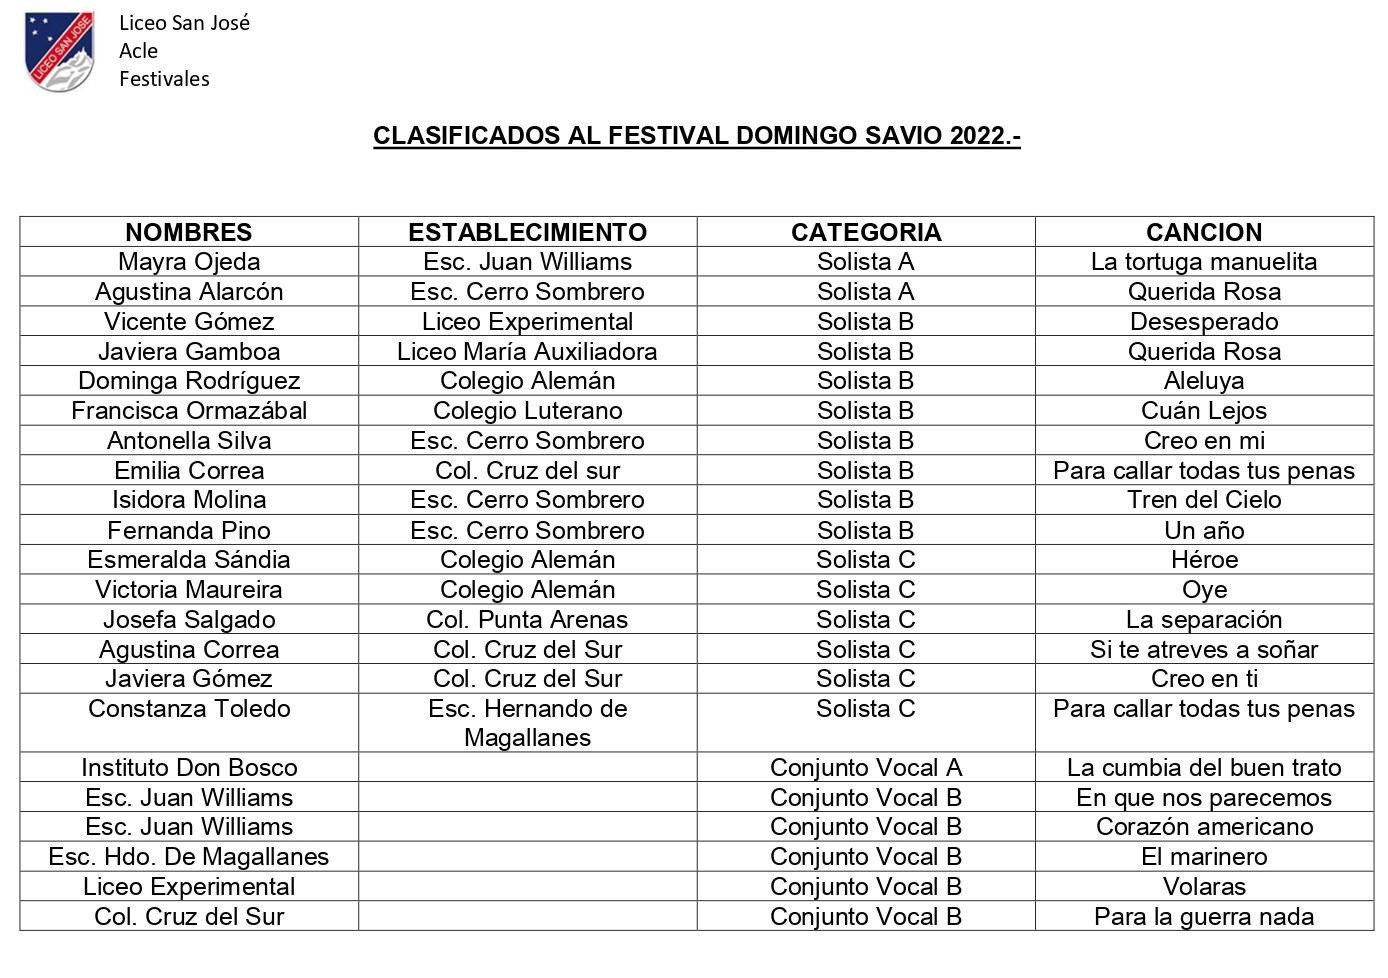 CLASIFICADOS AL FESTIVAL DOMINGO SAVIO 2022_page-0001dededed.jpg